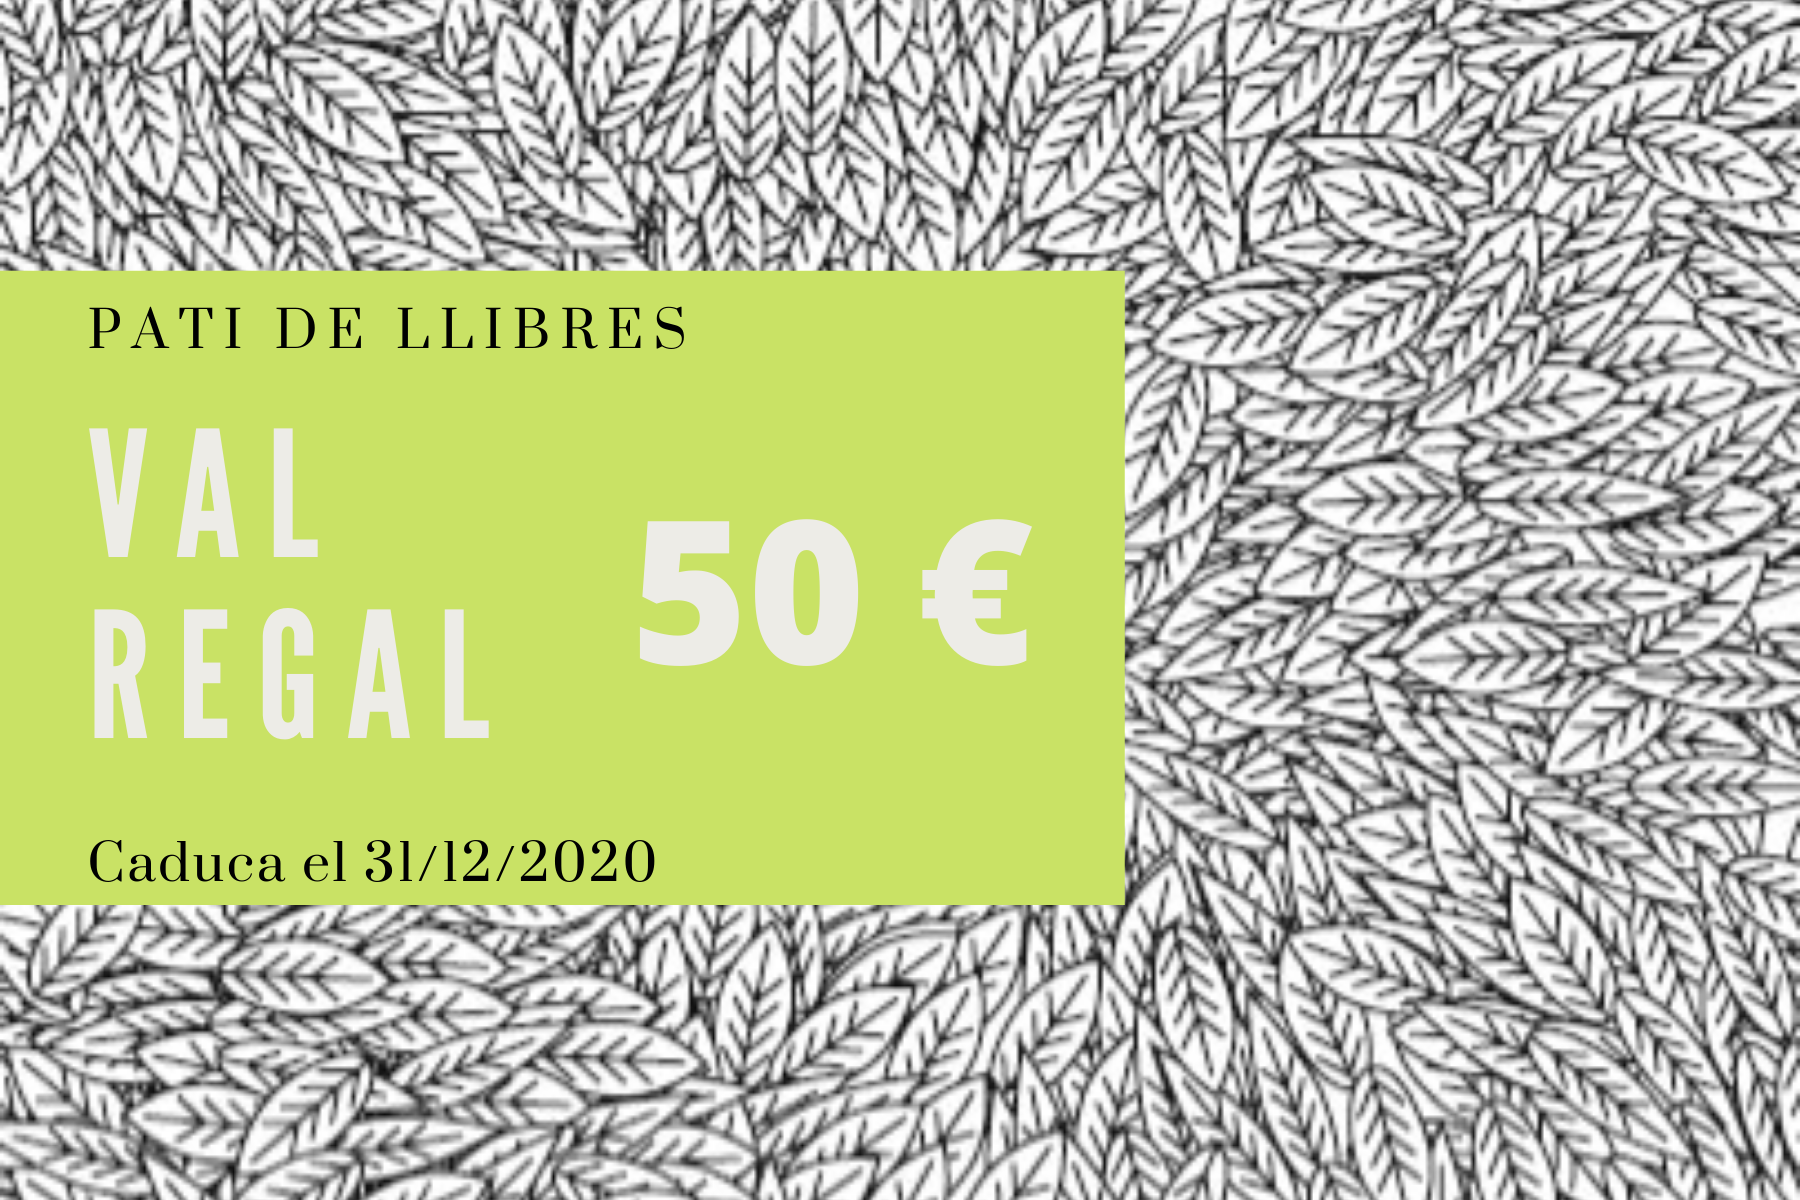 Val regal 50 euros - Pati de Llibres